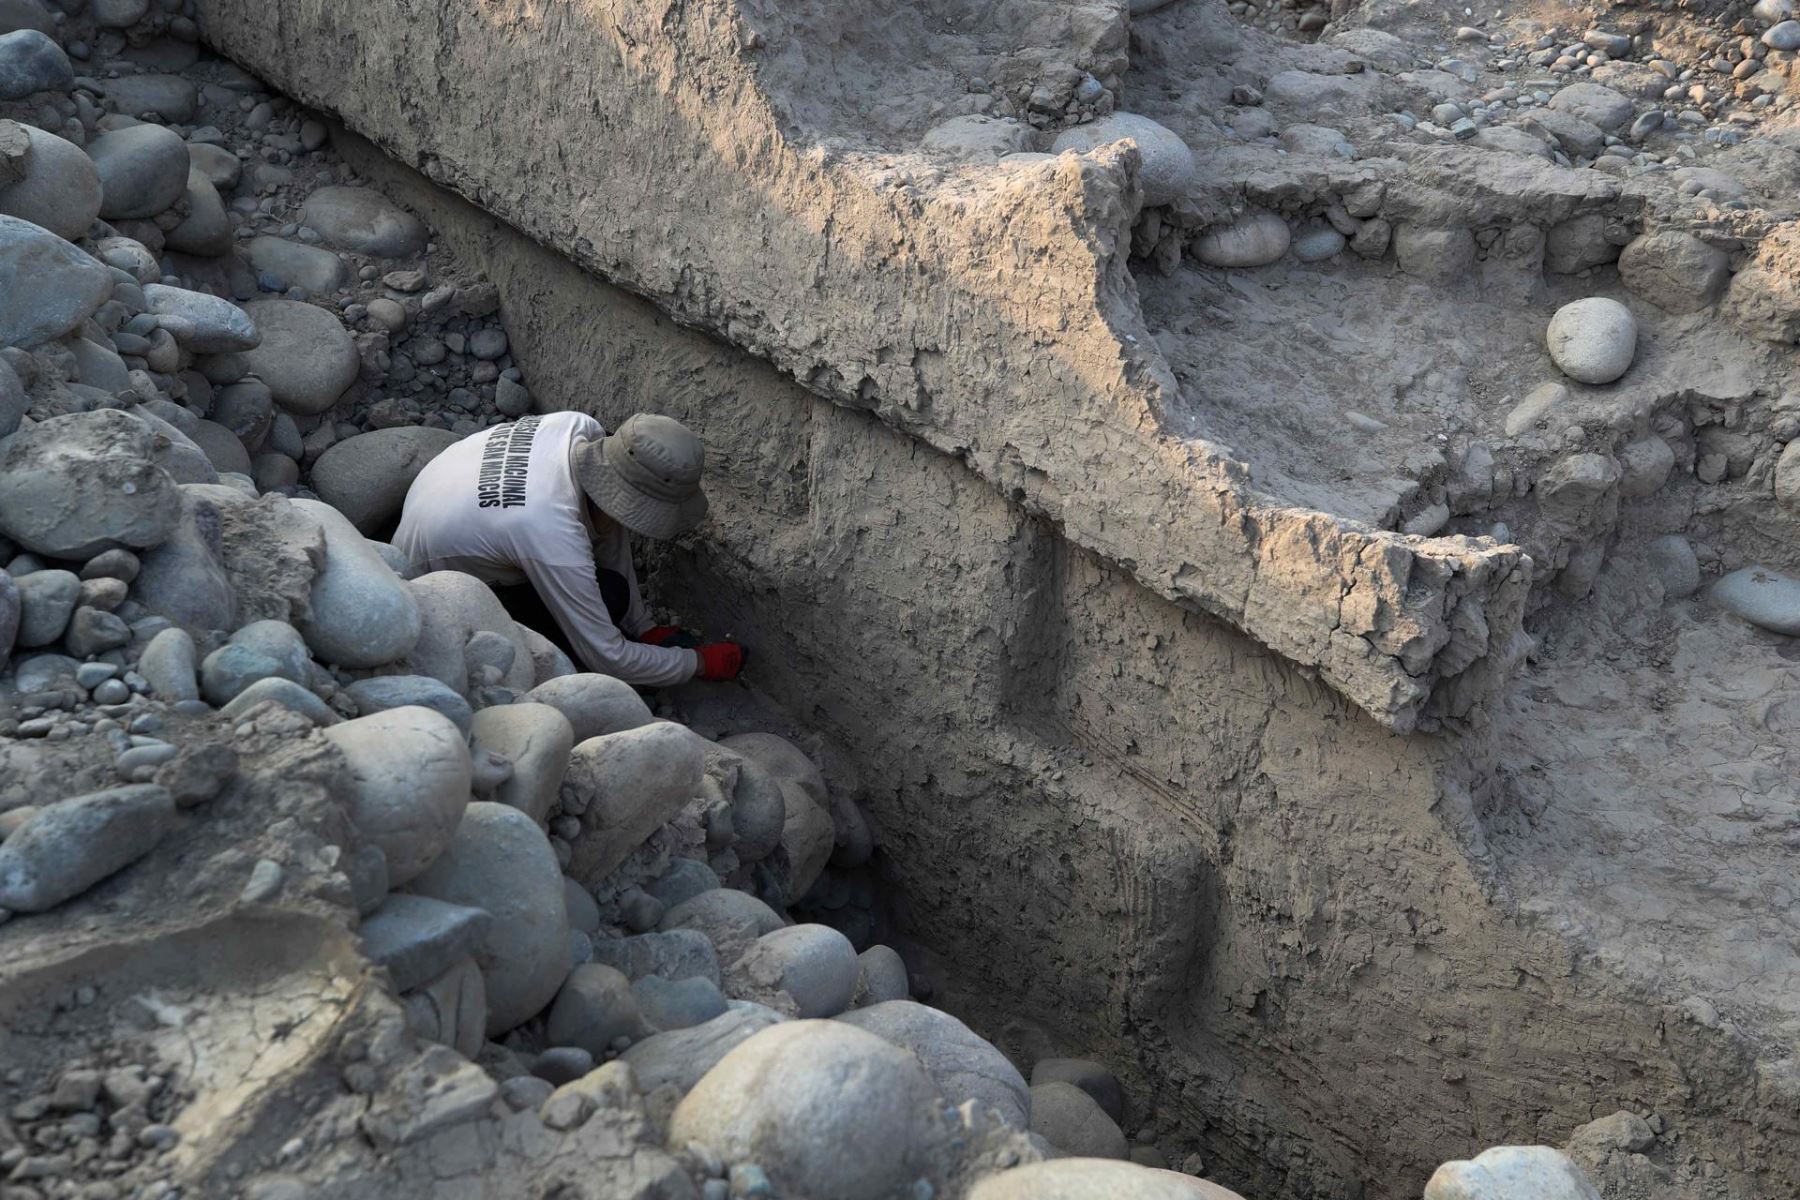 Una "chacana" (cruz andina) de más de 4,000 años de antigüedad fue hallada en el sitio arqueológico Miraflores, ubicado en el valle del río Chancay, provincia de Huaral, región Lima. EFE